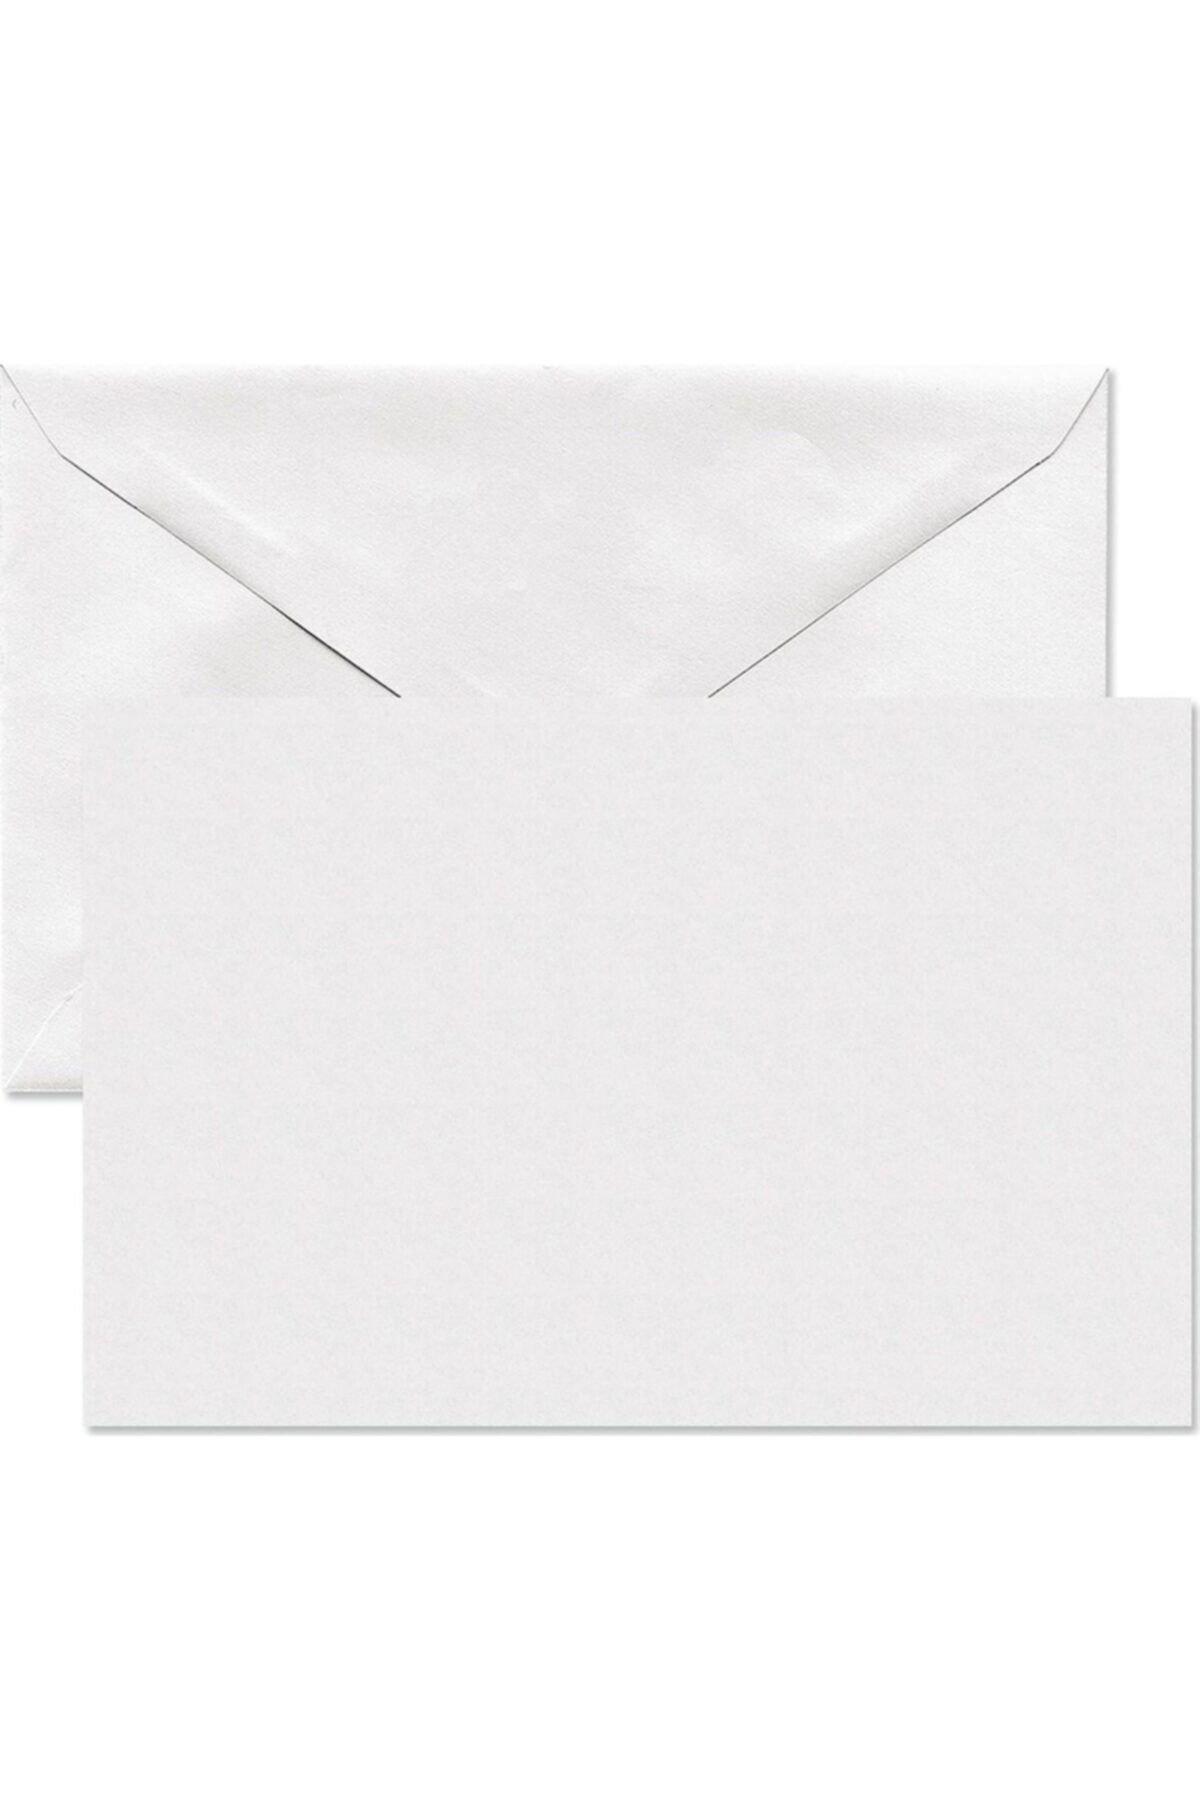 Genel Markalar Mektup Zarfı Tutkallı - 100 Adet 11,4x16,2 Cm 110 Gr